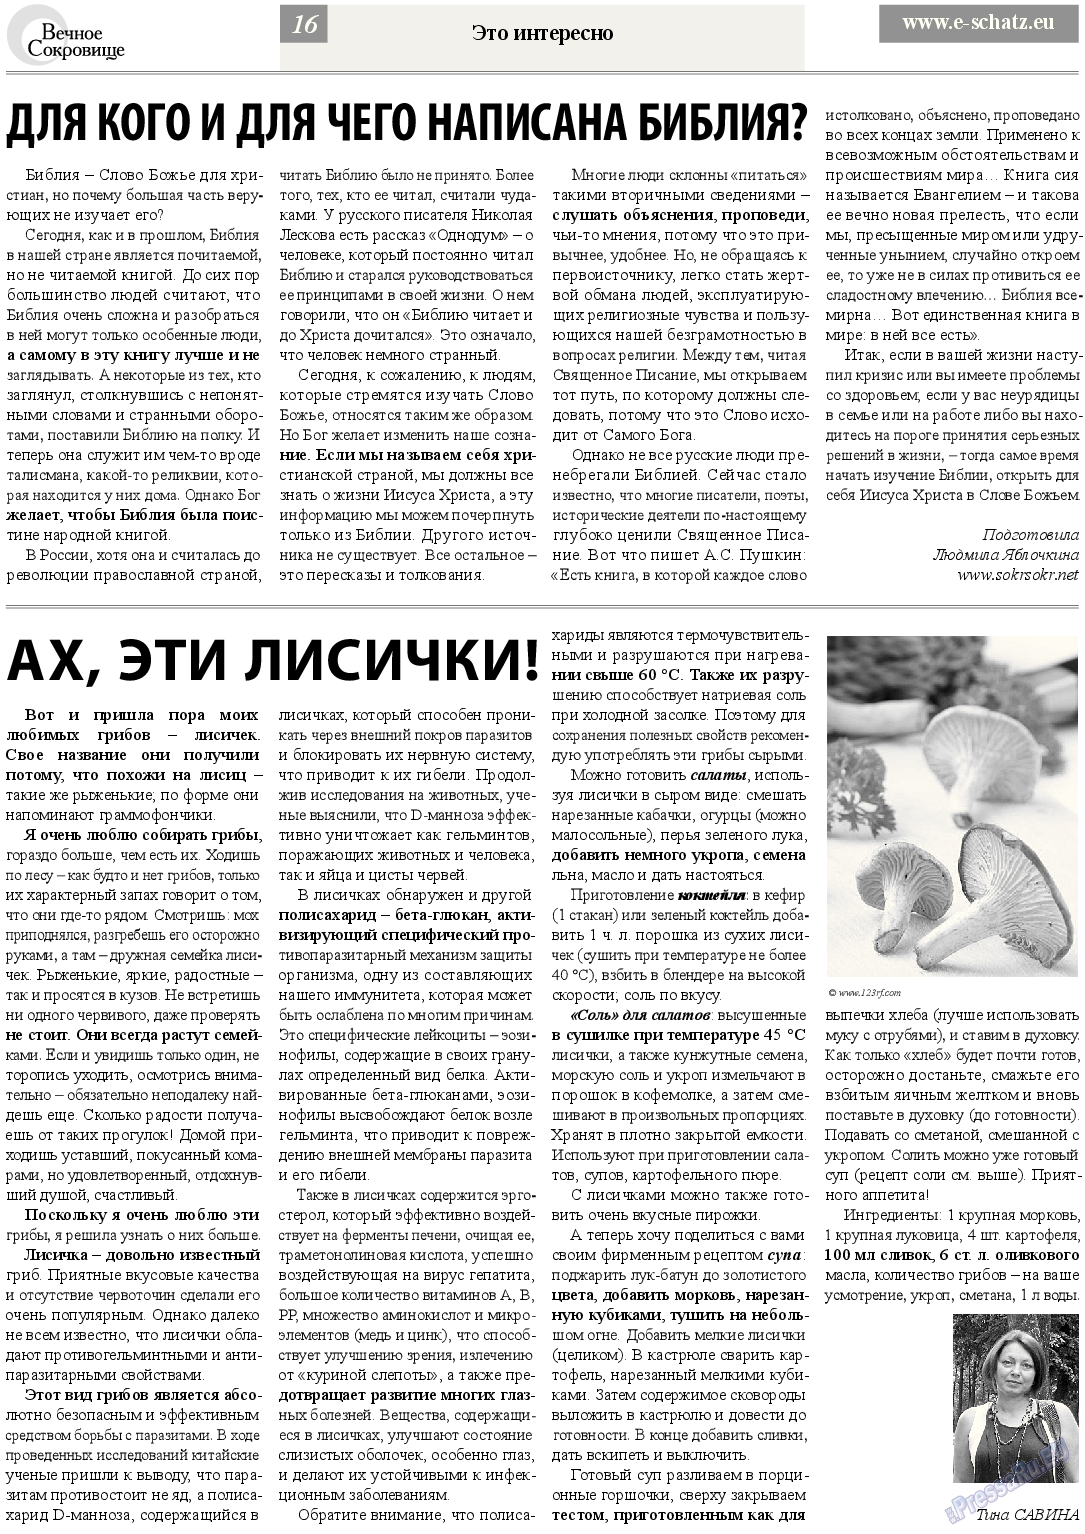 Вечное сокровище, газета. 2013 №4 стр.16